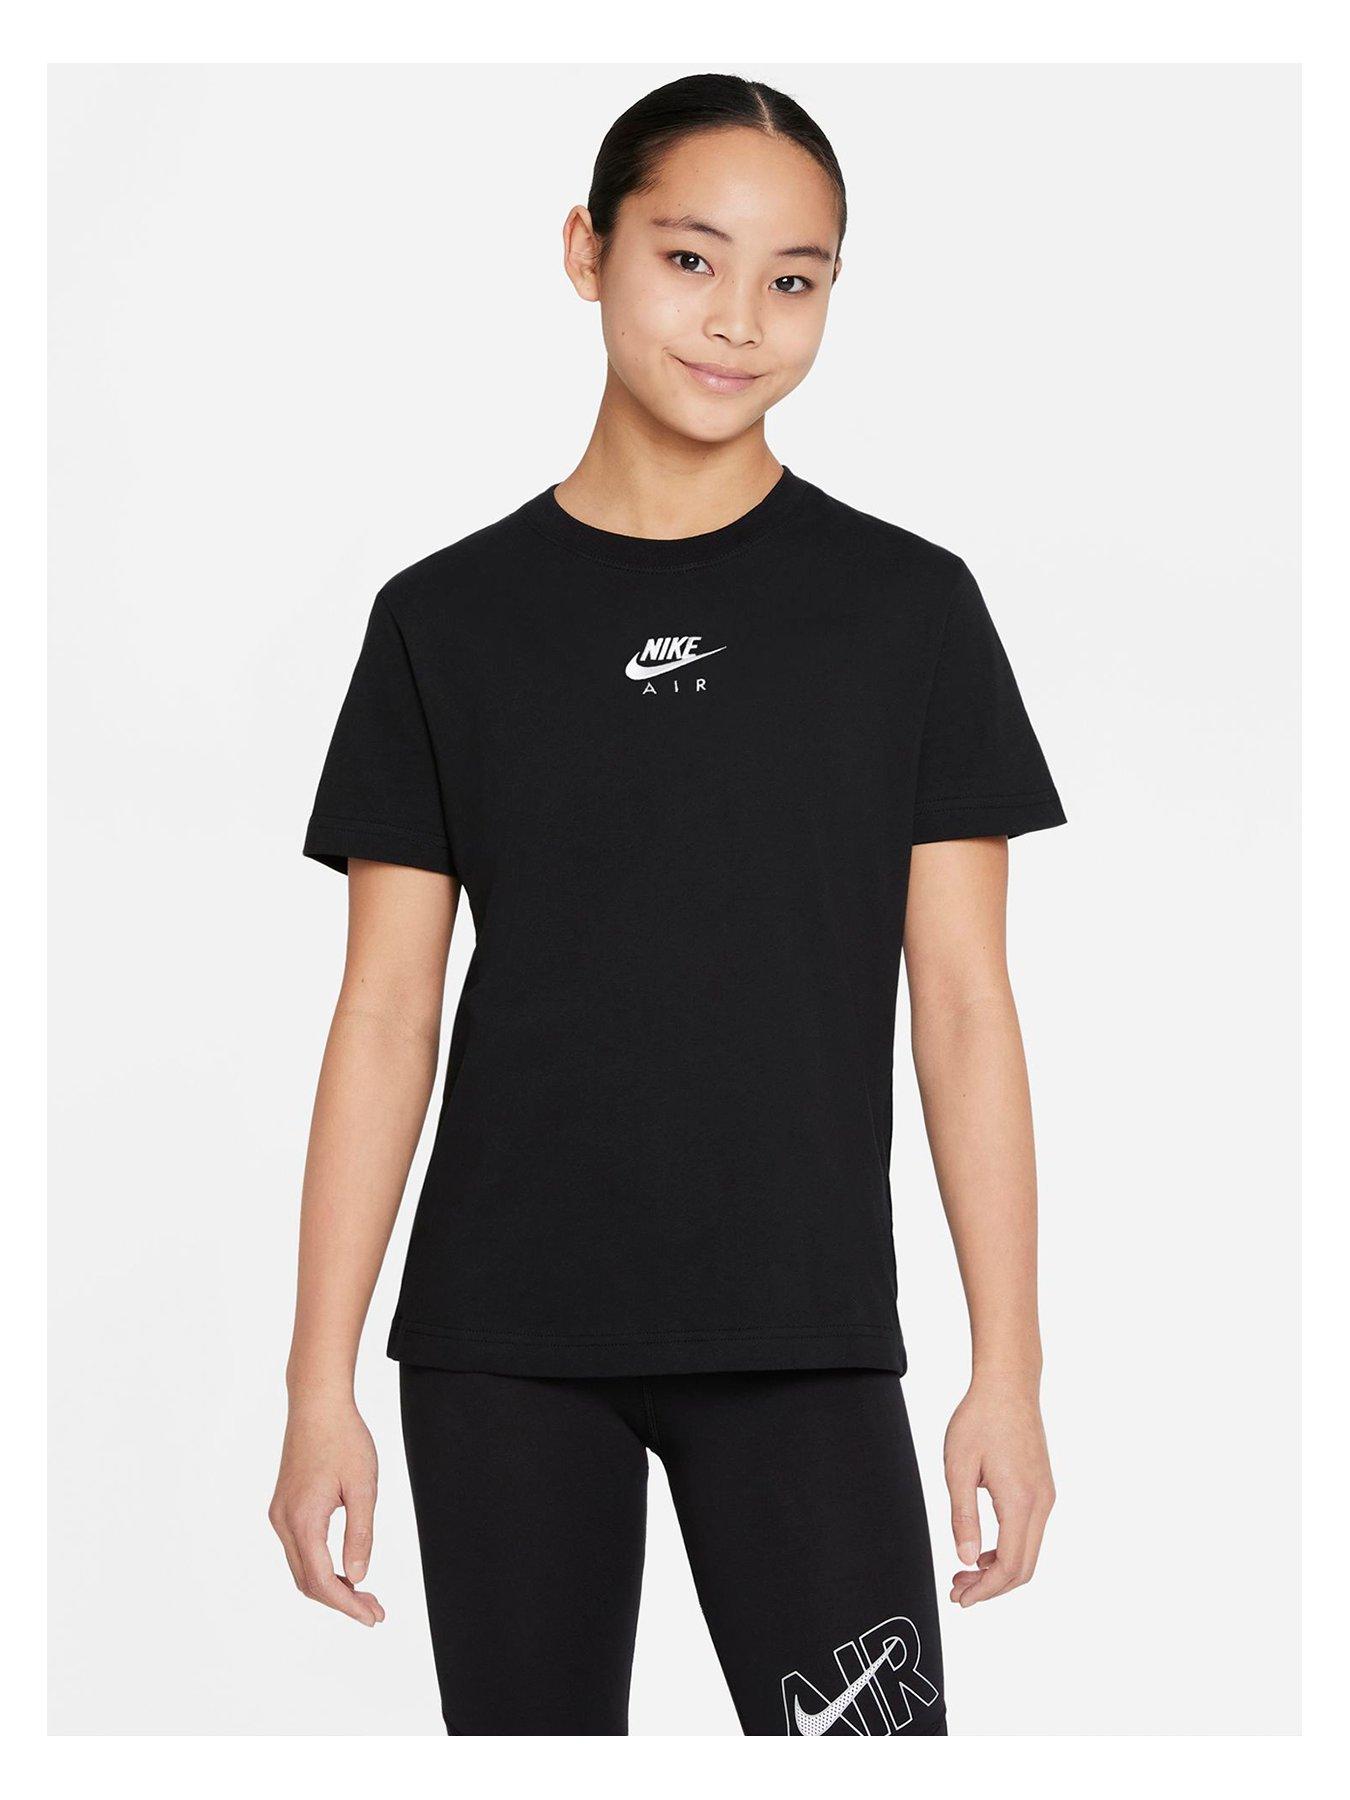 Kids Older Girls Nsw Air Boyfriend T-shirt - Black